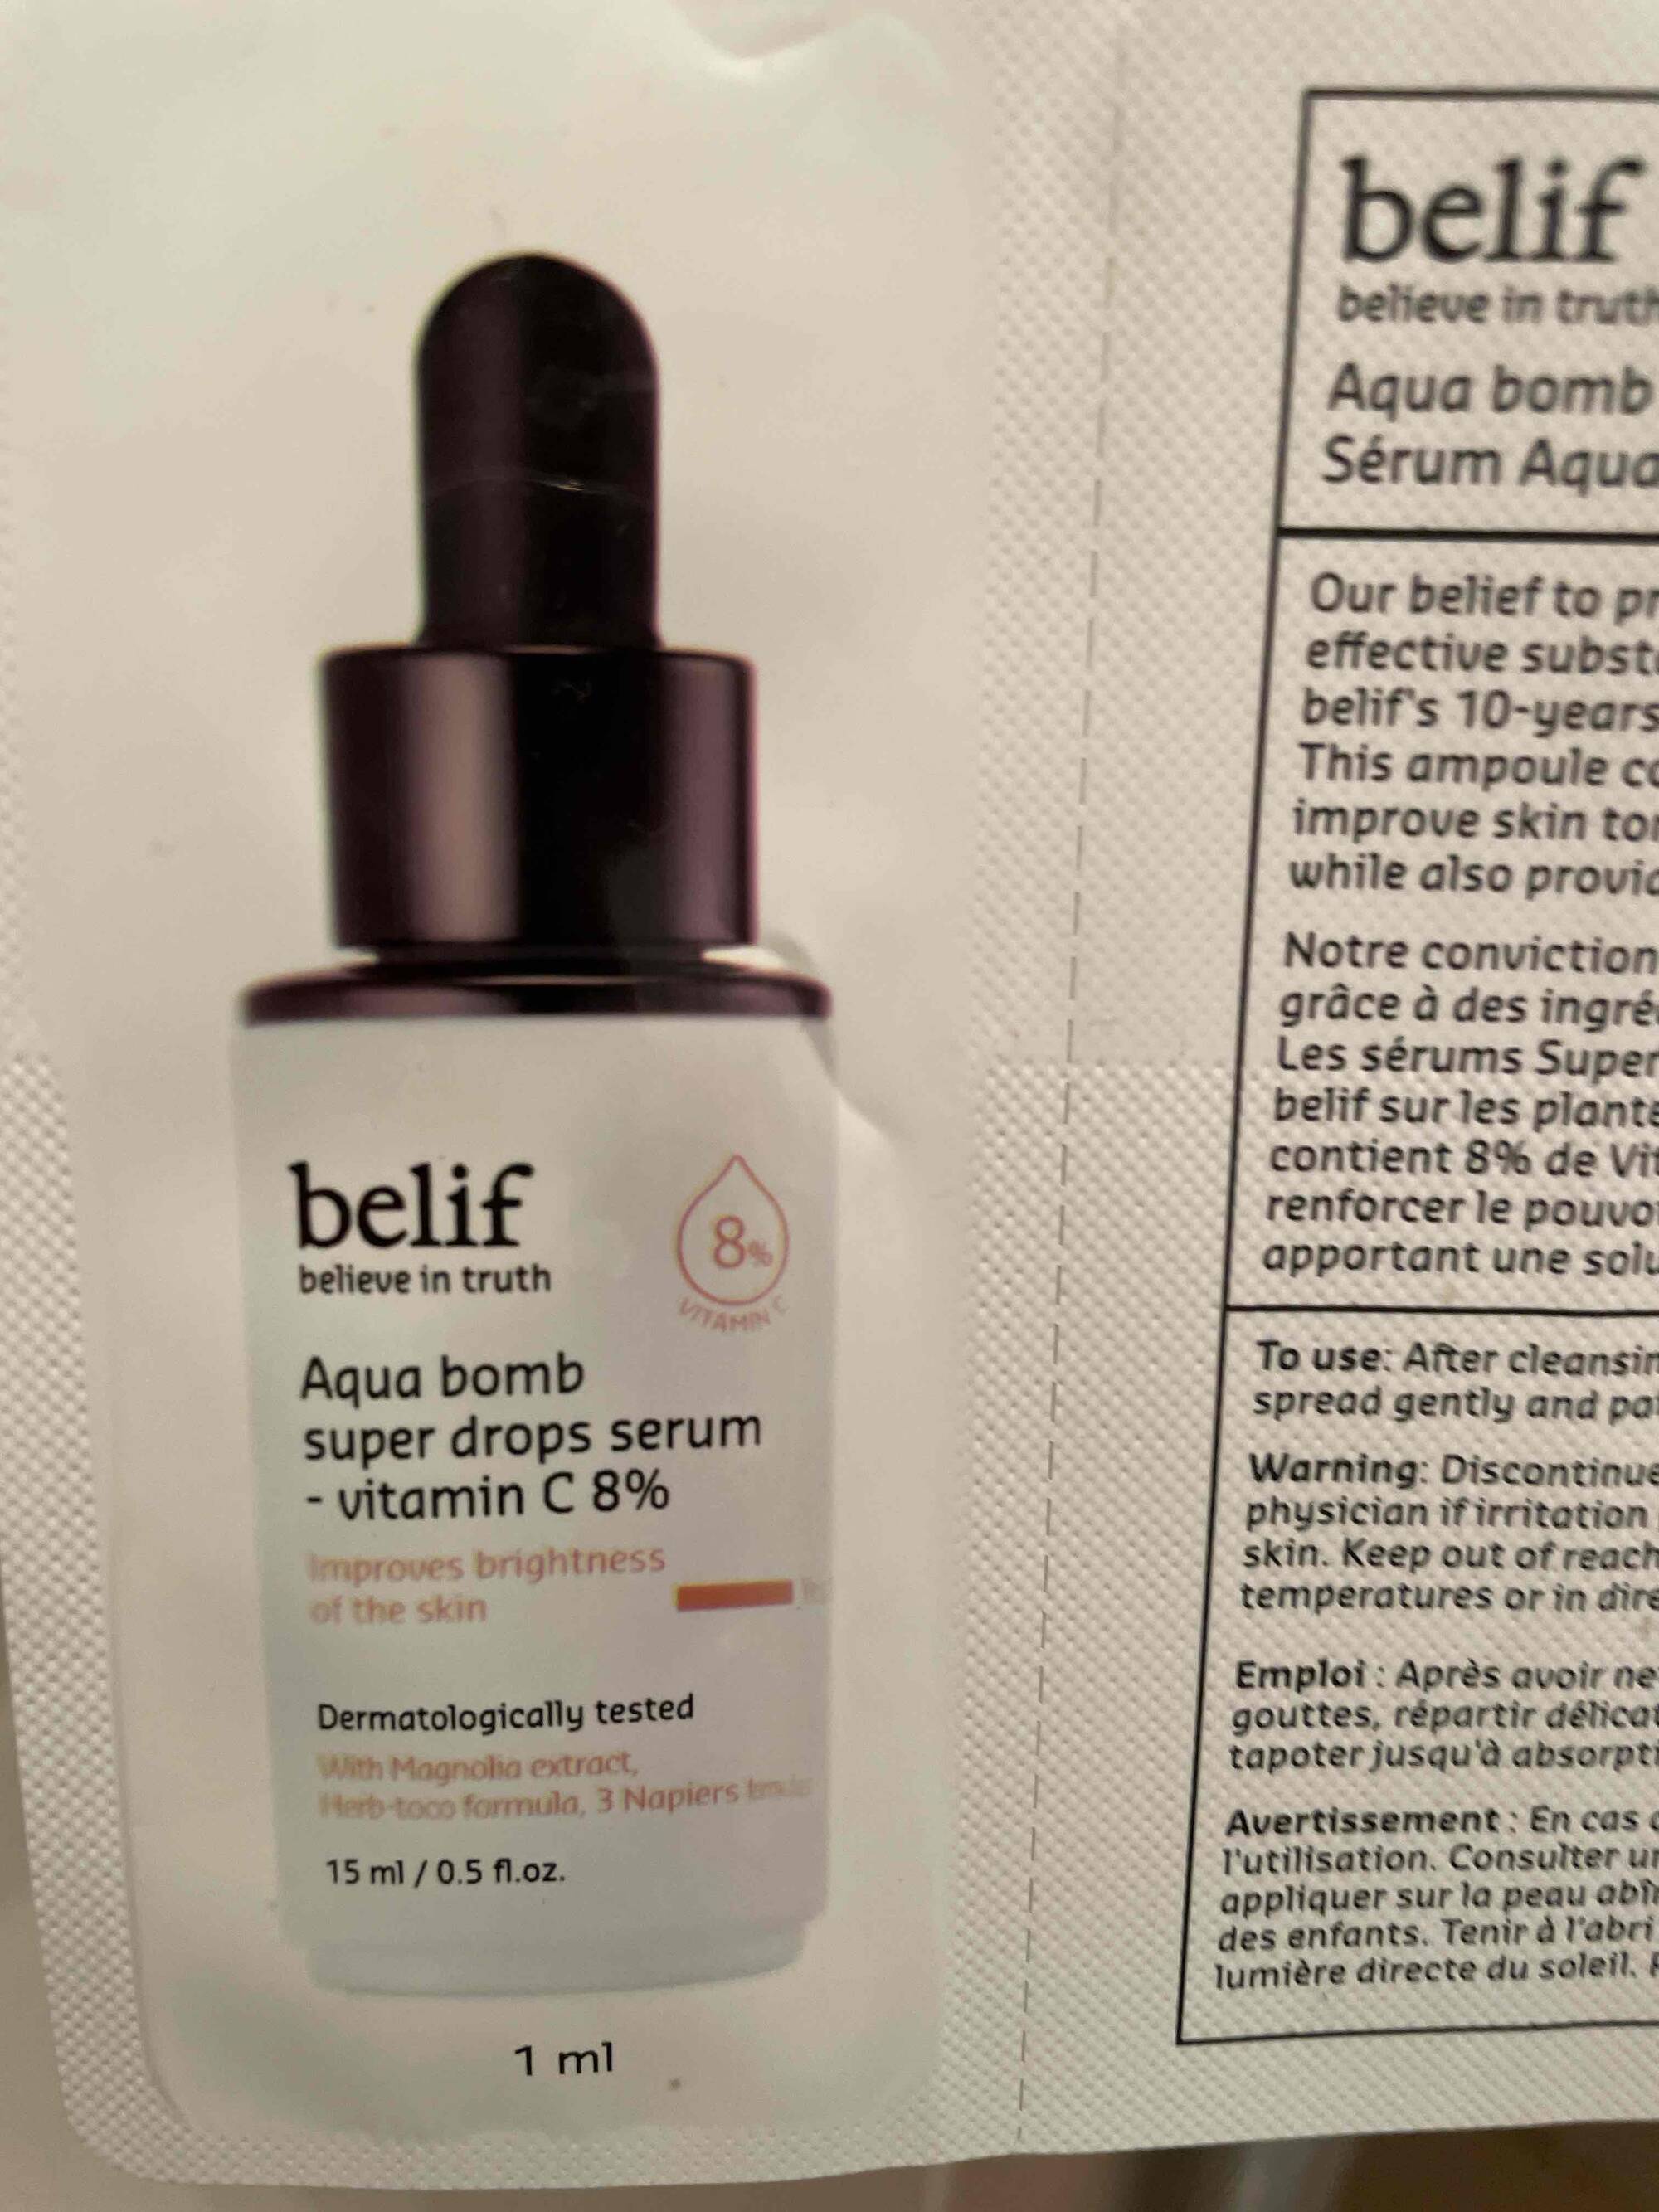 BELIF - Aqua bomb super drops serum vitamin C 8%